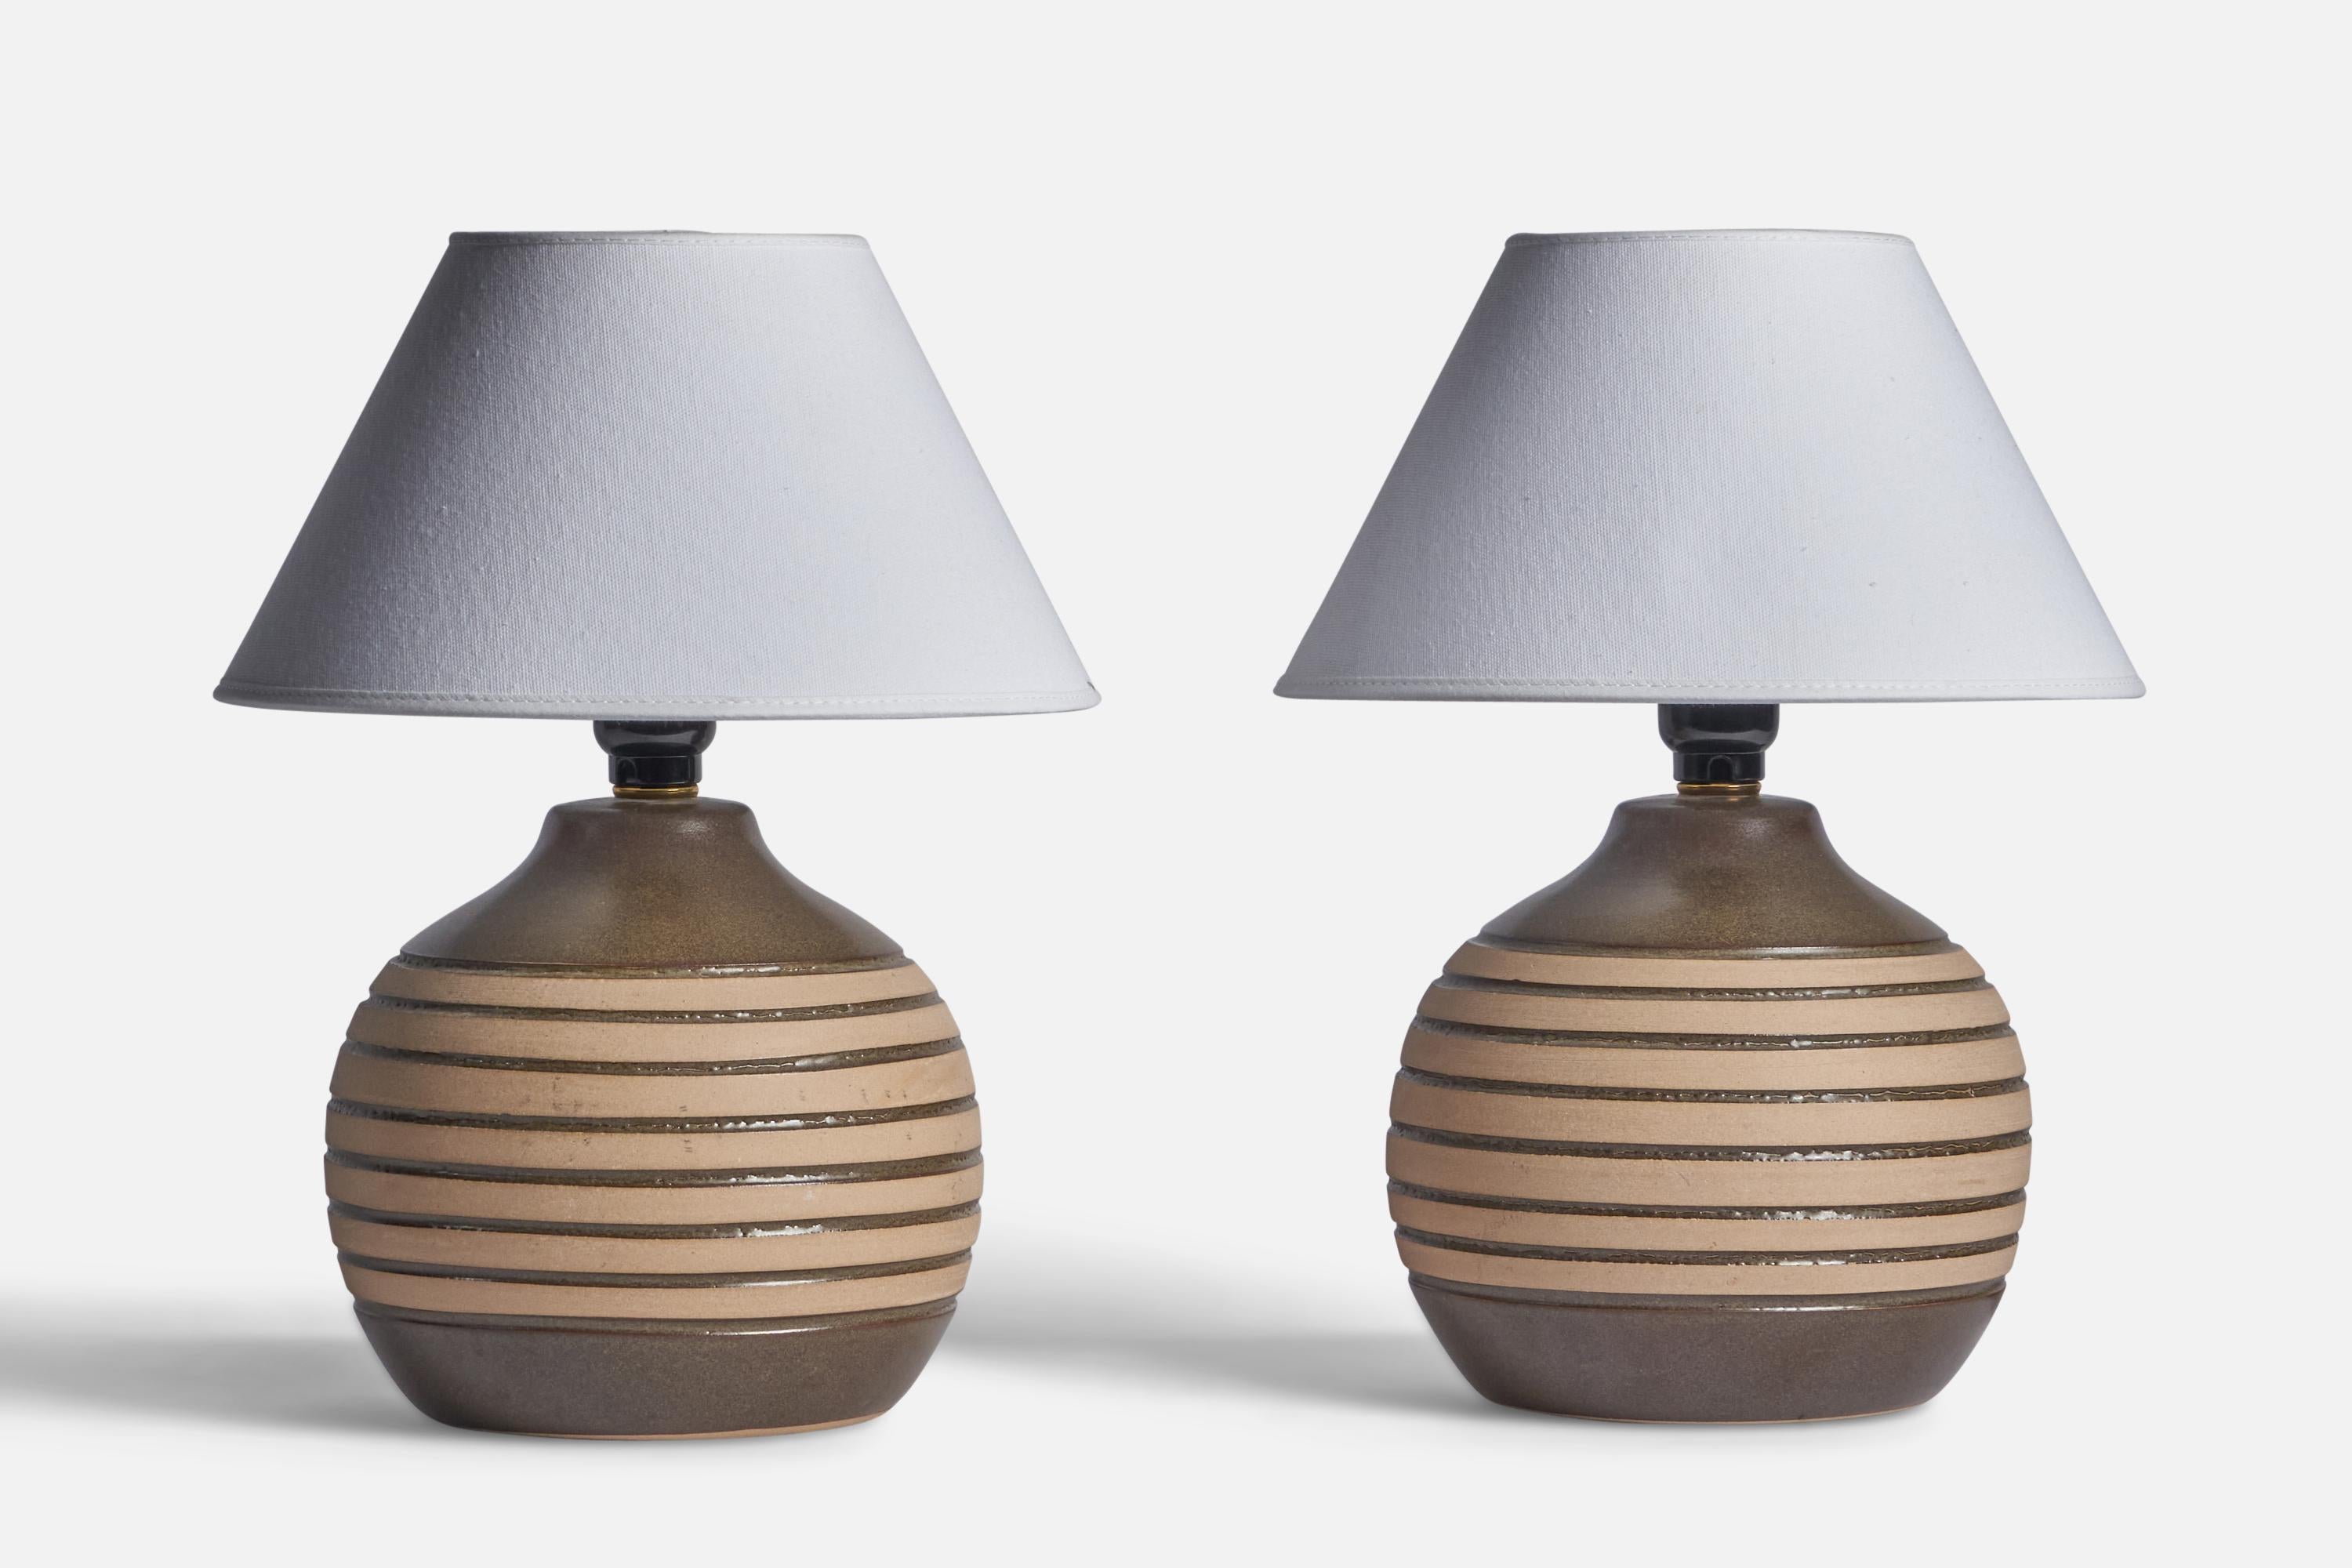 Paire de lampes de table en céramique émaillée grise et beige, conçues par Jane & Gordon Martz et produites par Marshall Studios, États-Unis, années 1960.

Dimensions de la lampe (pouces) : 10.25